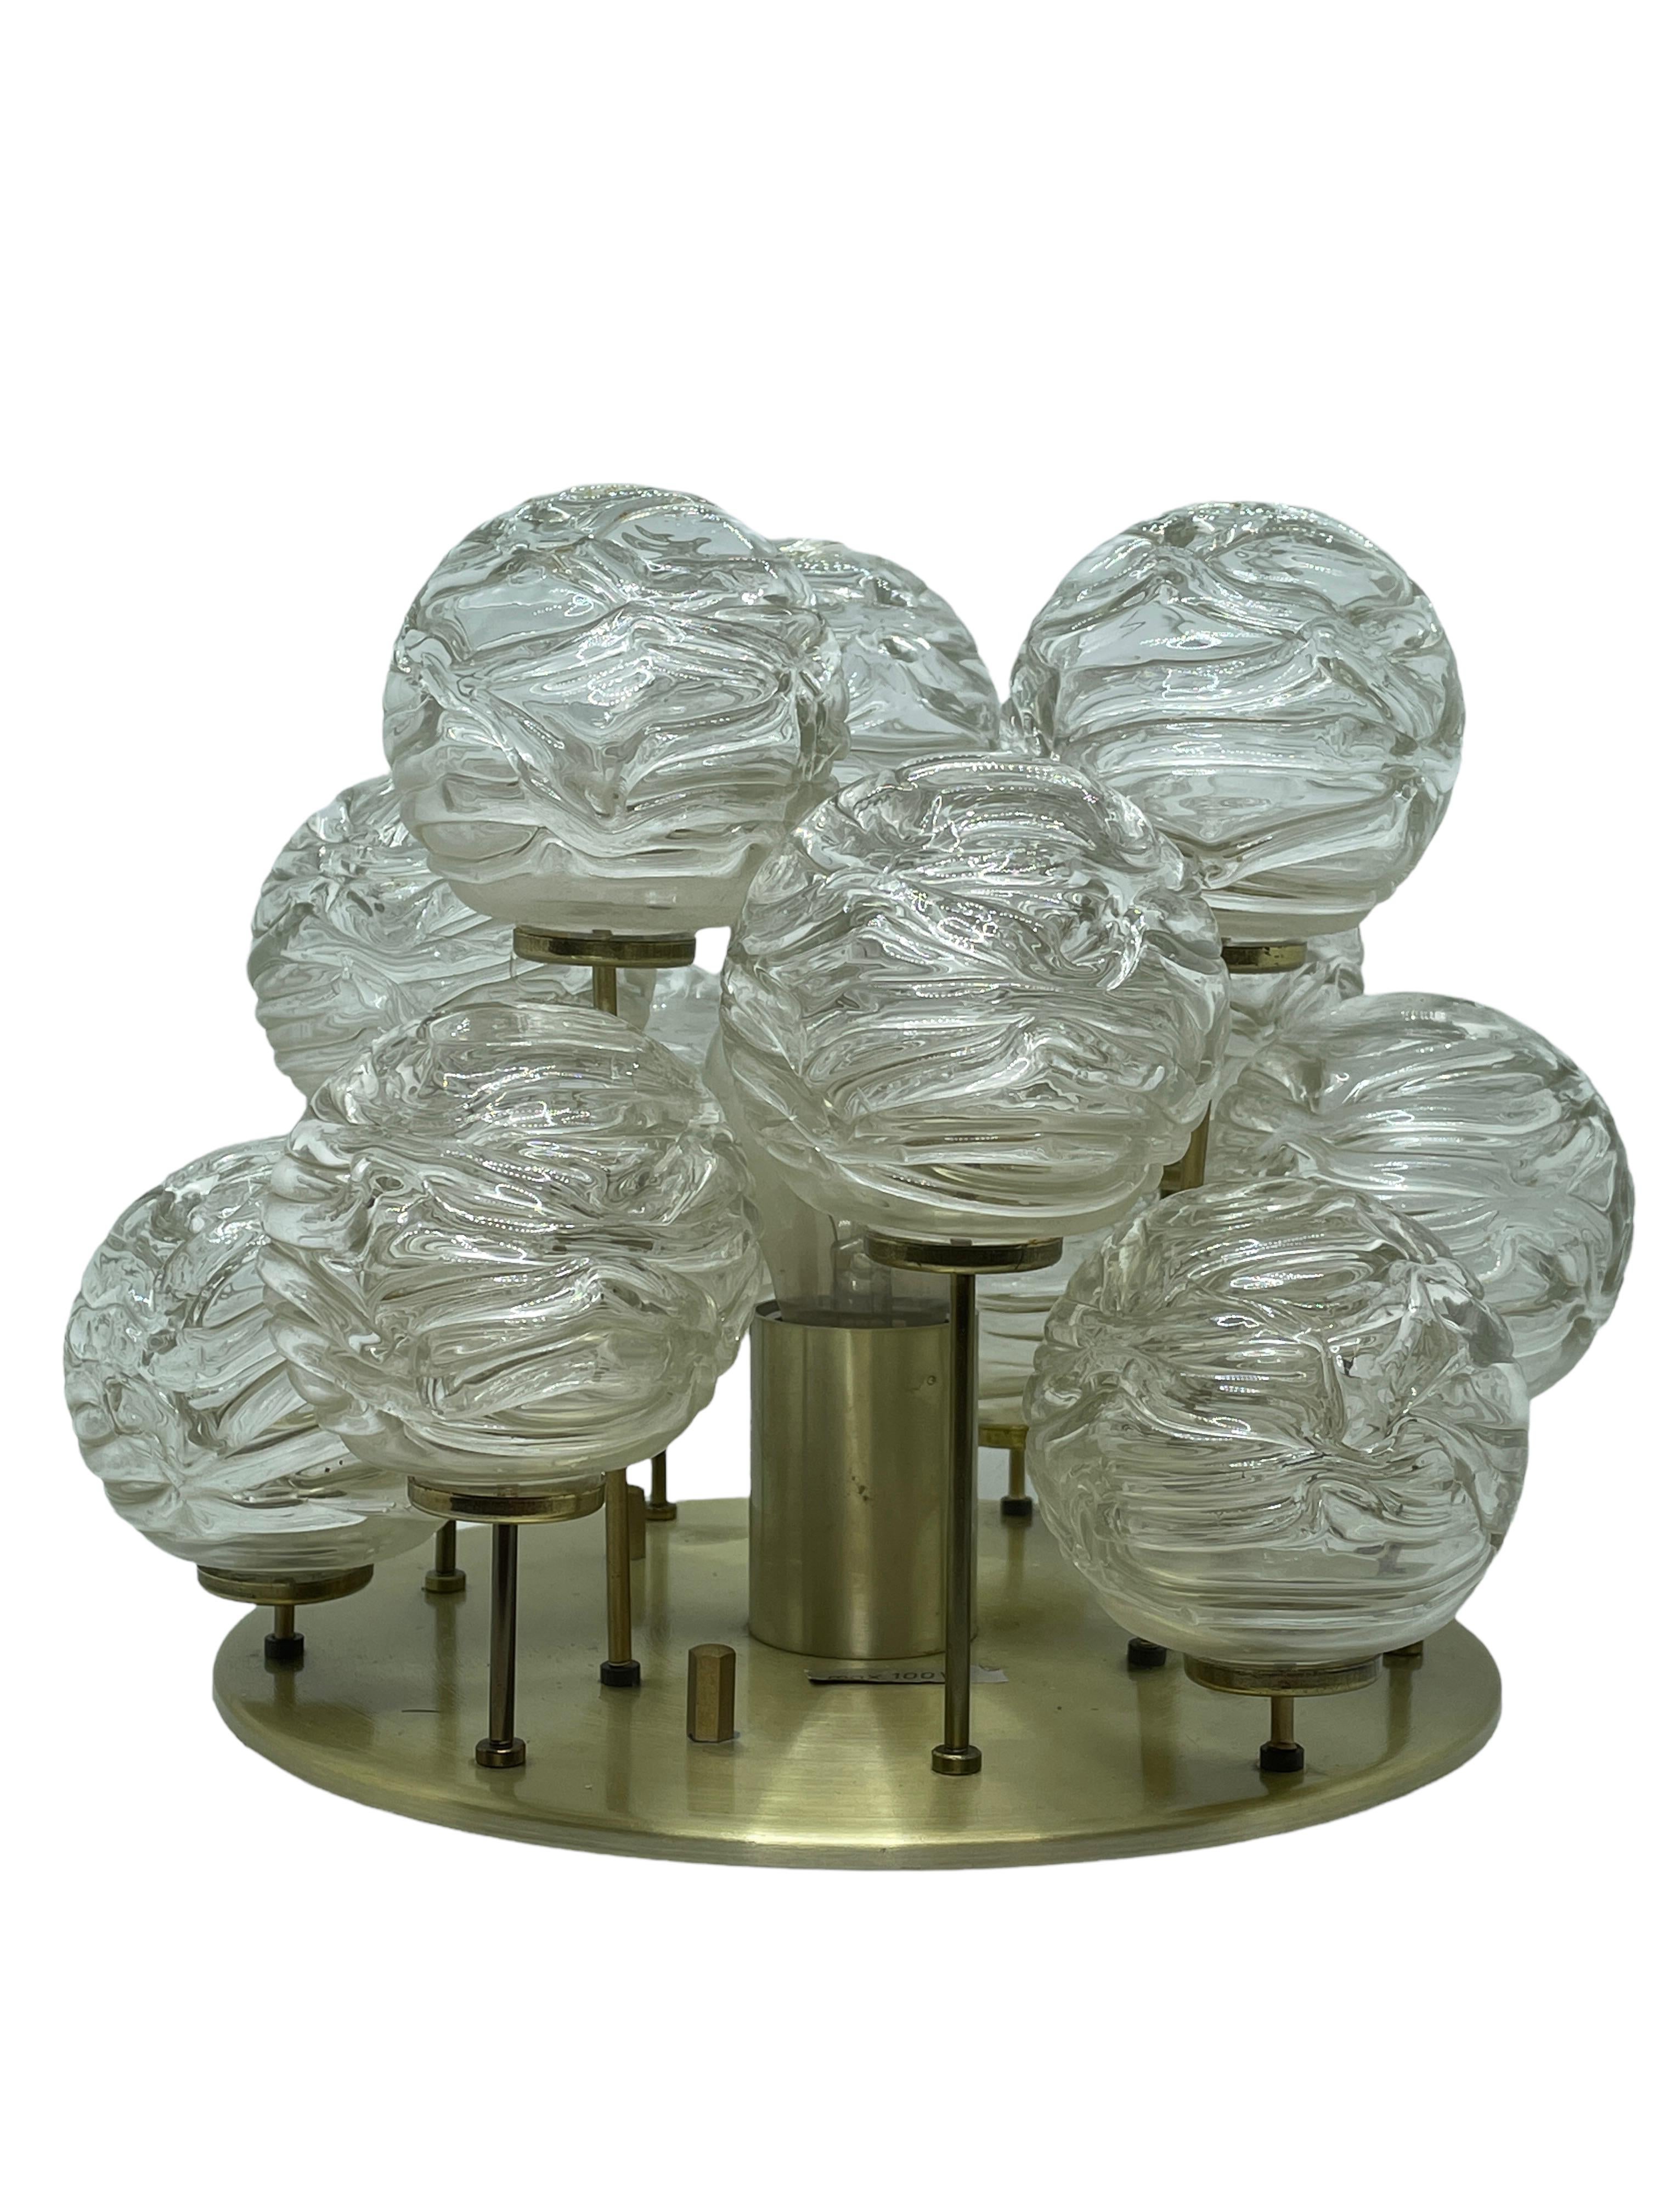 Fixation encastrée avec boule en verre tourbillonnant par Doria Leuchten, Allemagne. Les boules de verre soufflé sont fixées à des tiges de laiton de différentes longueurs qui, lorsqu'elles sont éclairées par une seule source lumineuse, produisent